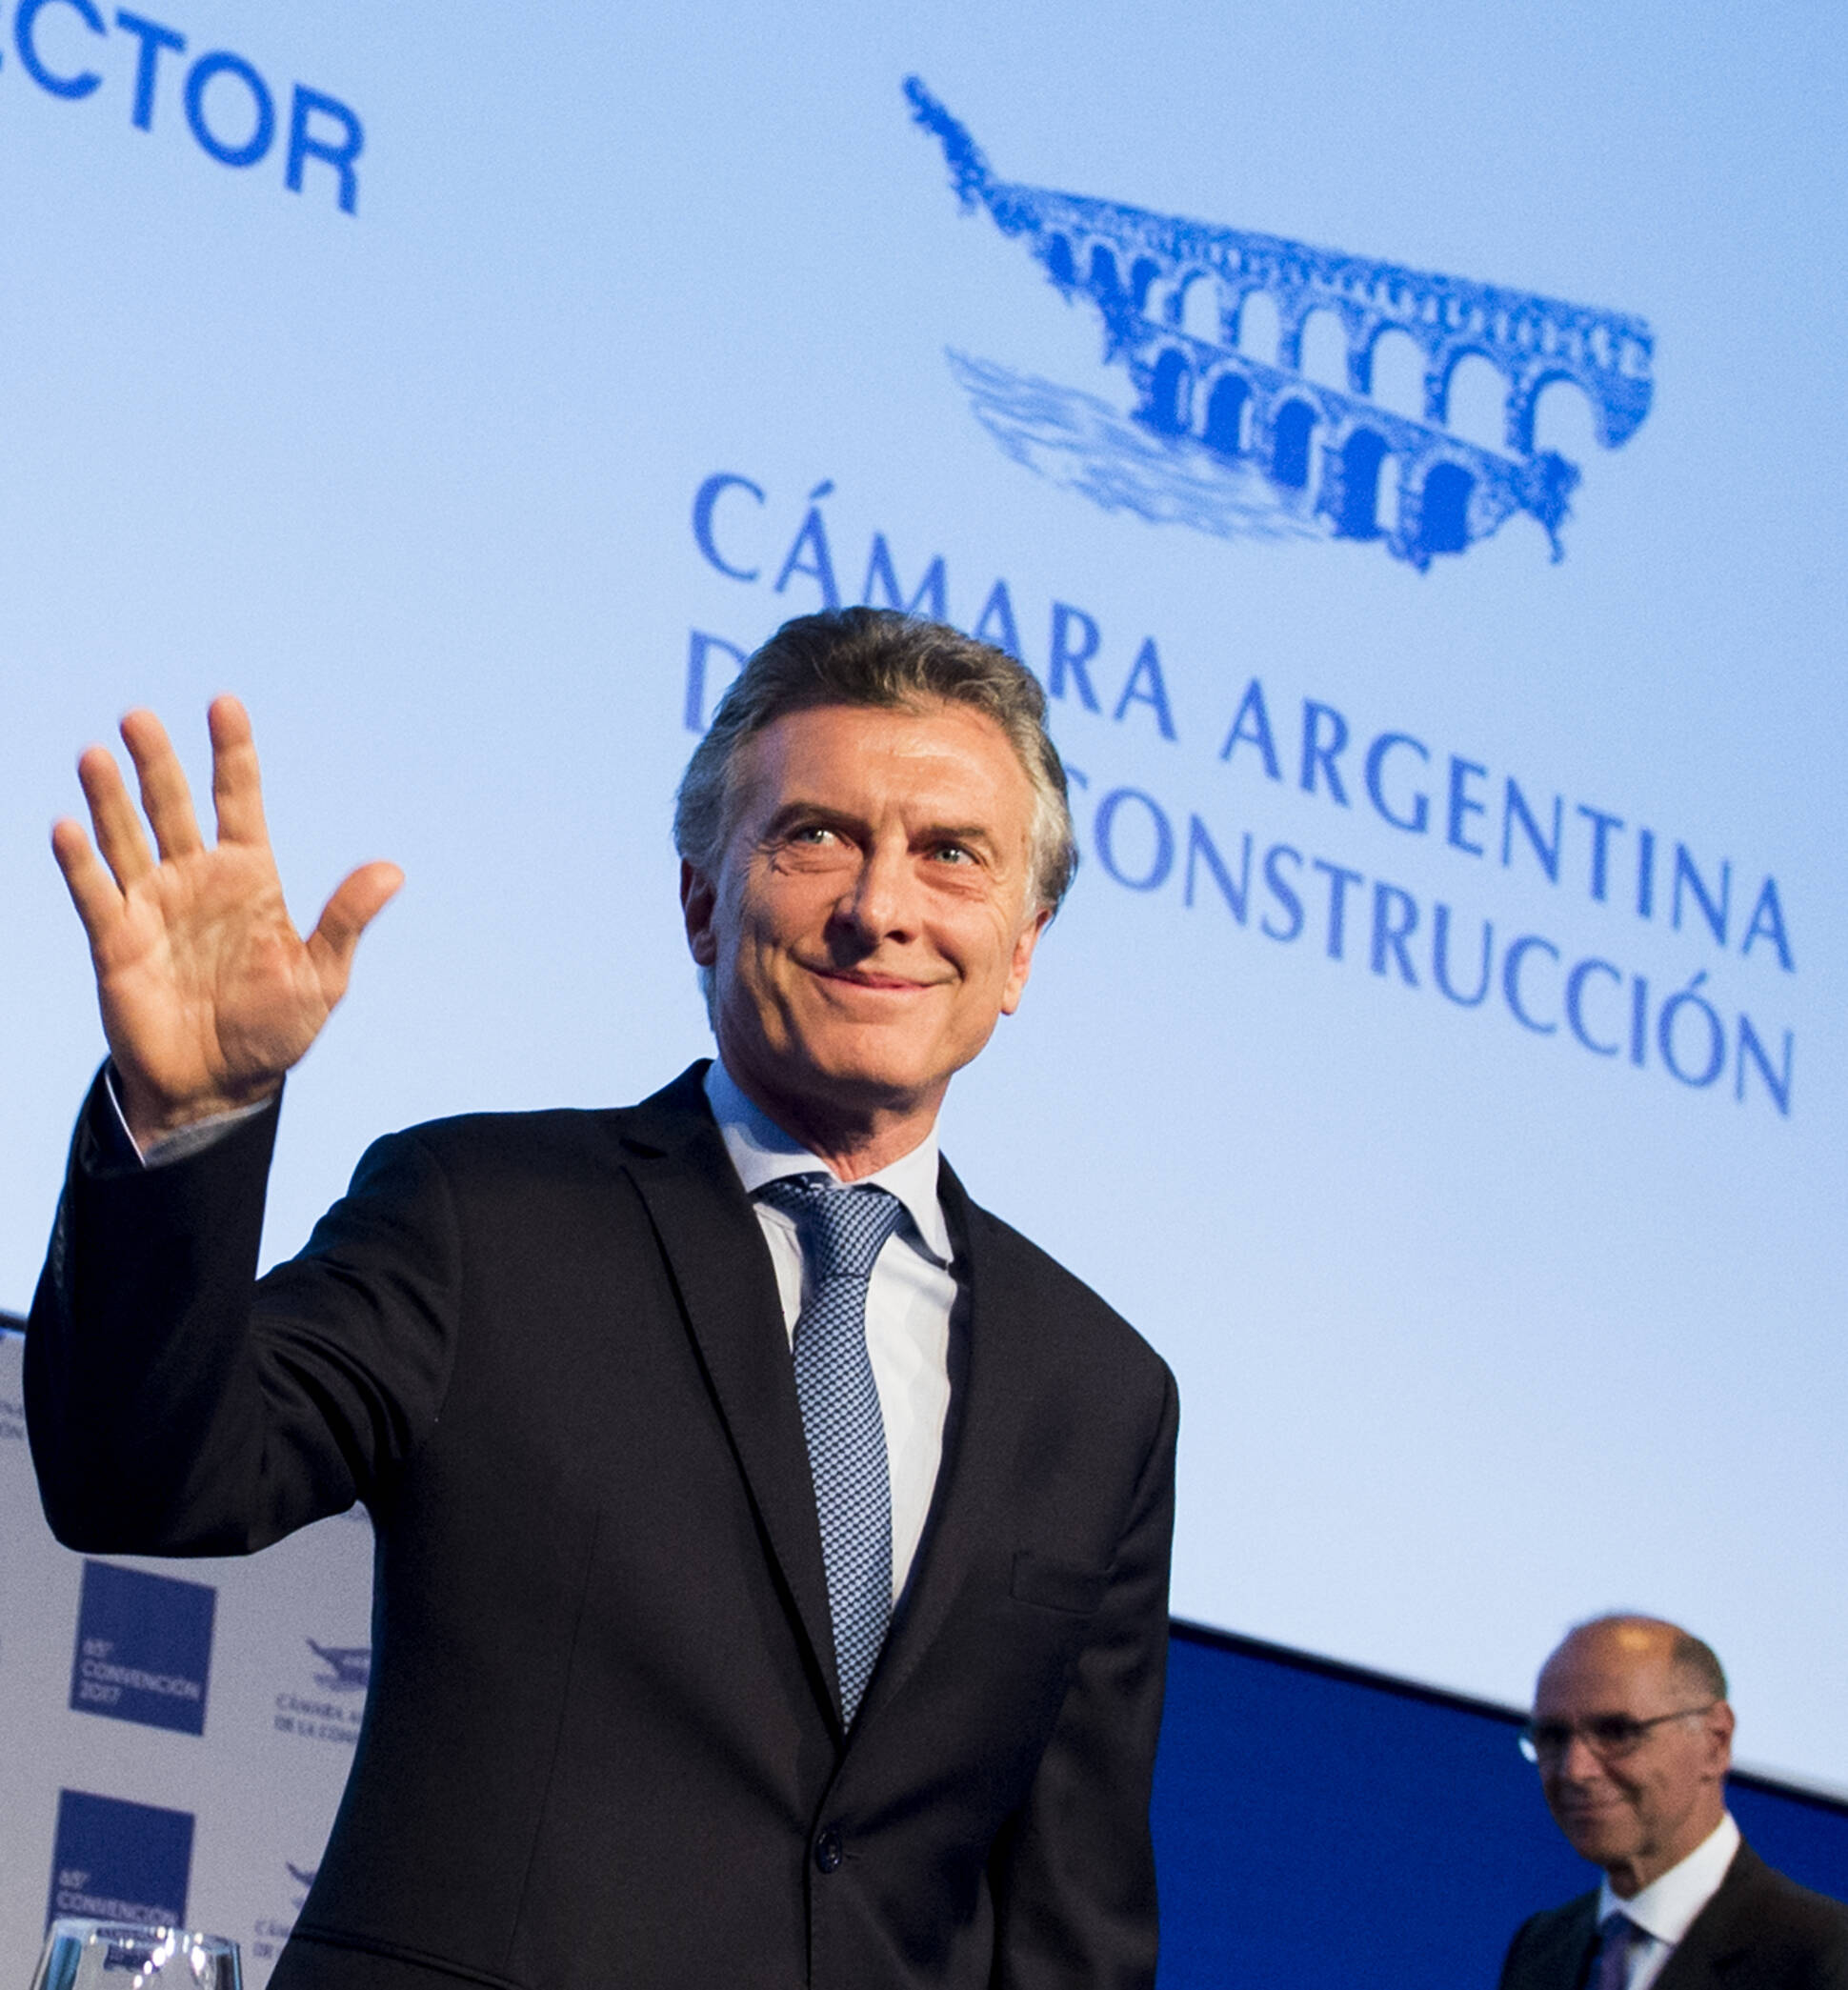 Juntos podemos ser la generación que termine con el problema de la vivienda en la Argentina”